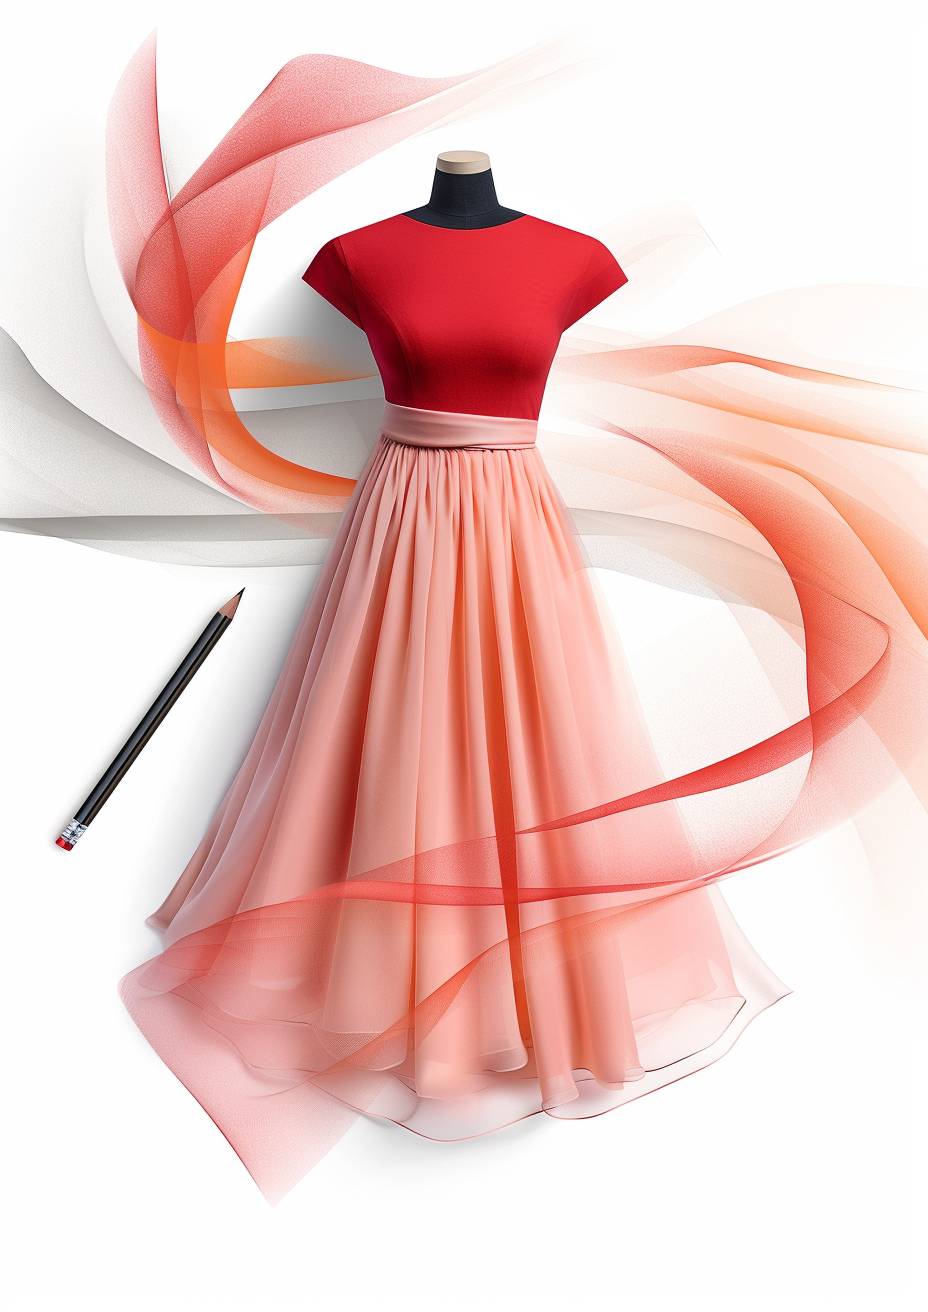 衣服の計画構造図、ドレス、ミニマリスト、ピンク、シフォン、非対称構造、鉛筆ラインドラフト、